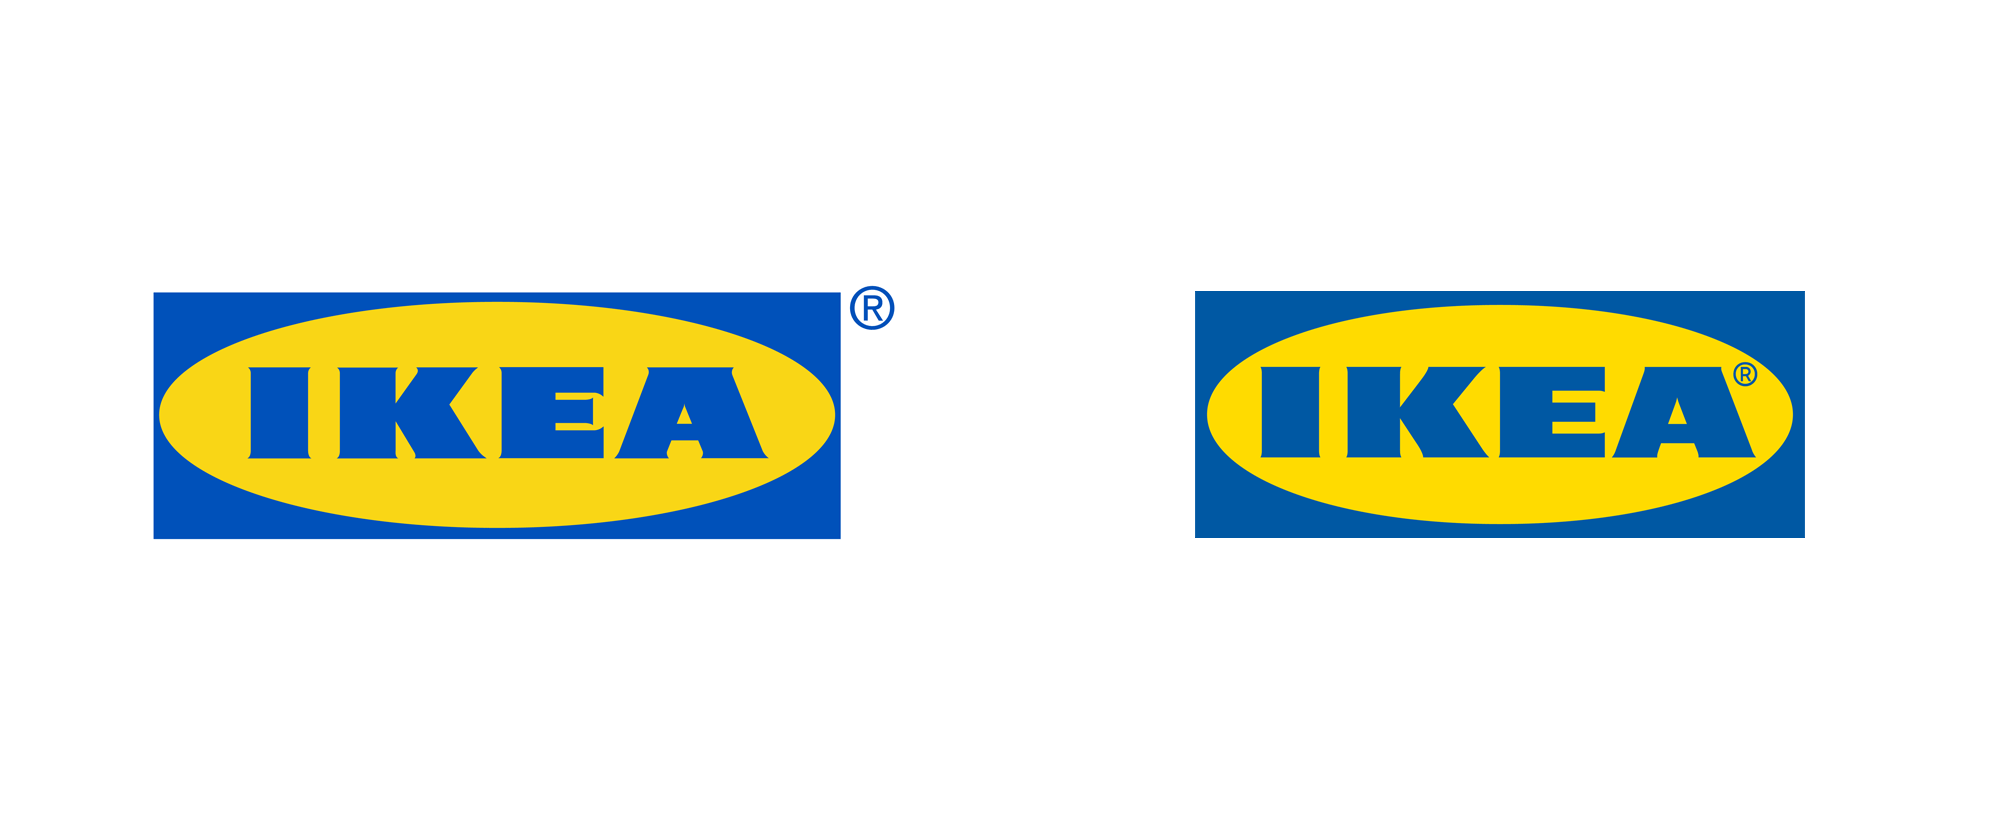 IKEA brand profile U.S. 2022